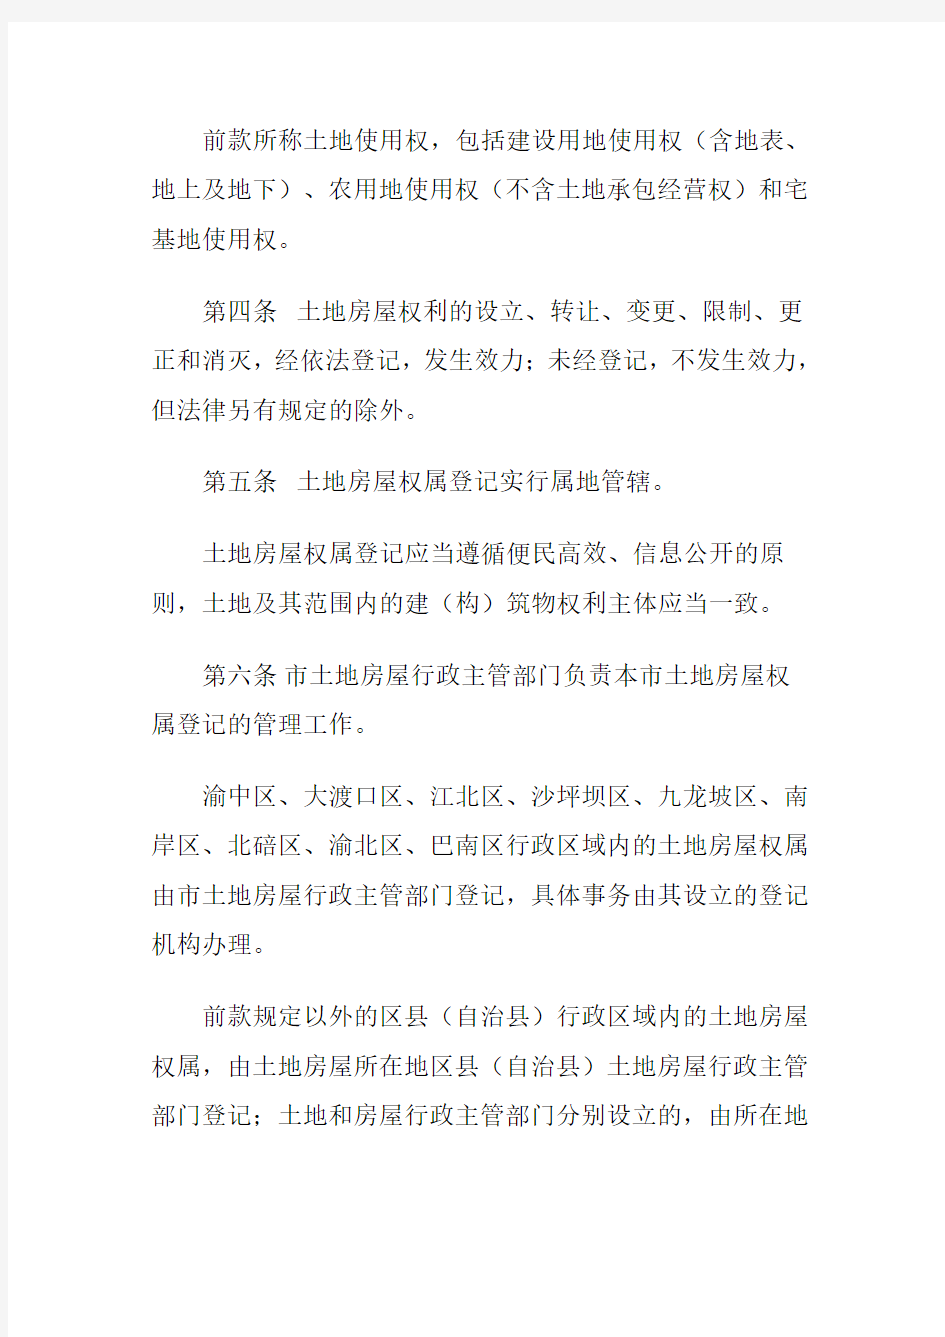 重庆市土地房屋权属登记条例 2012年版